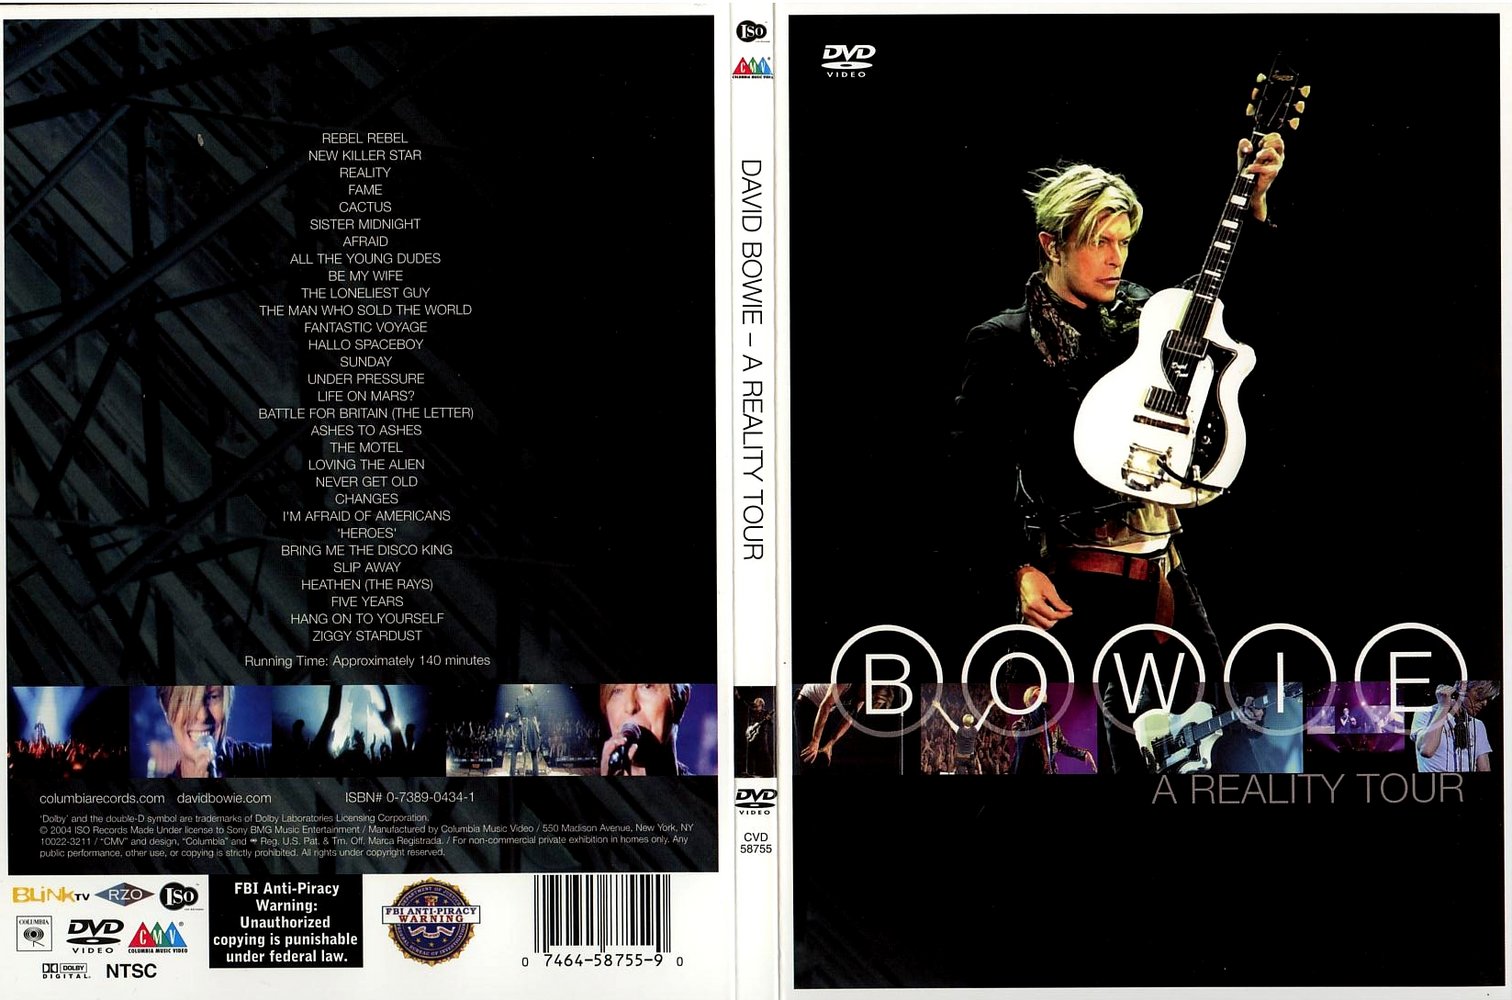 Jaquette DVD David Bowie A reality tour